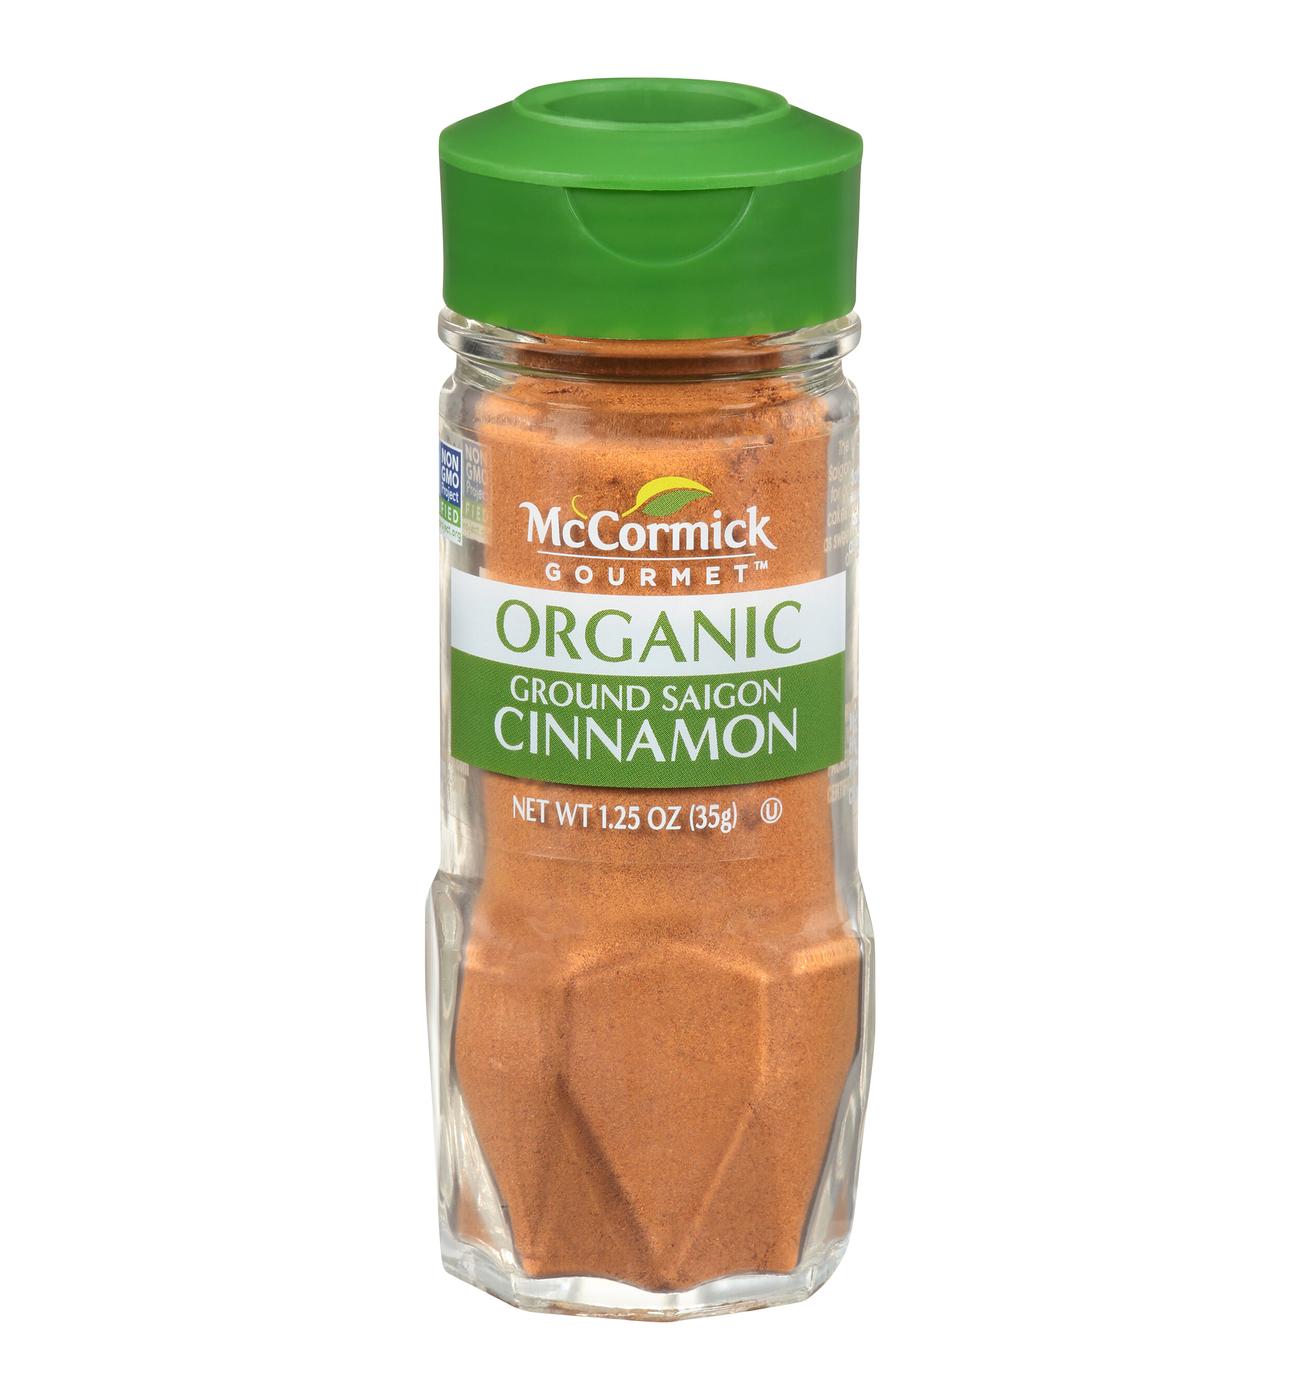 McCormick Organic Ground Saigon Cinnamon; image 1 of 4